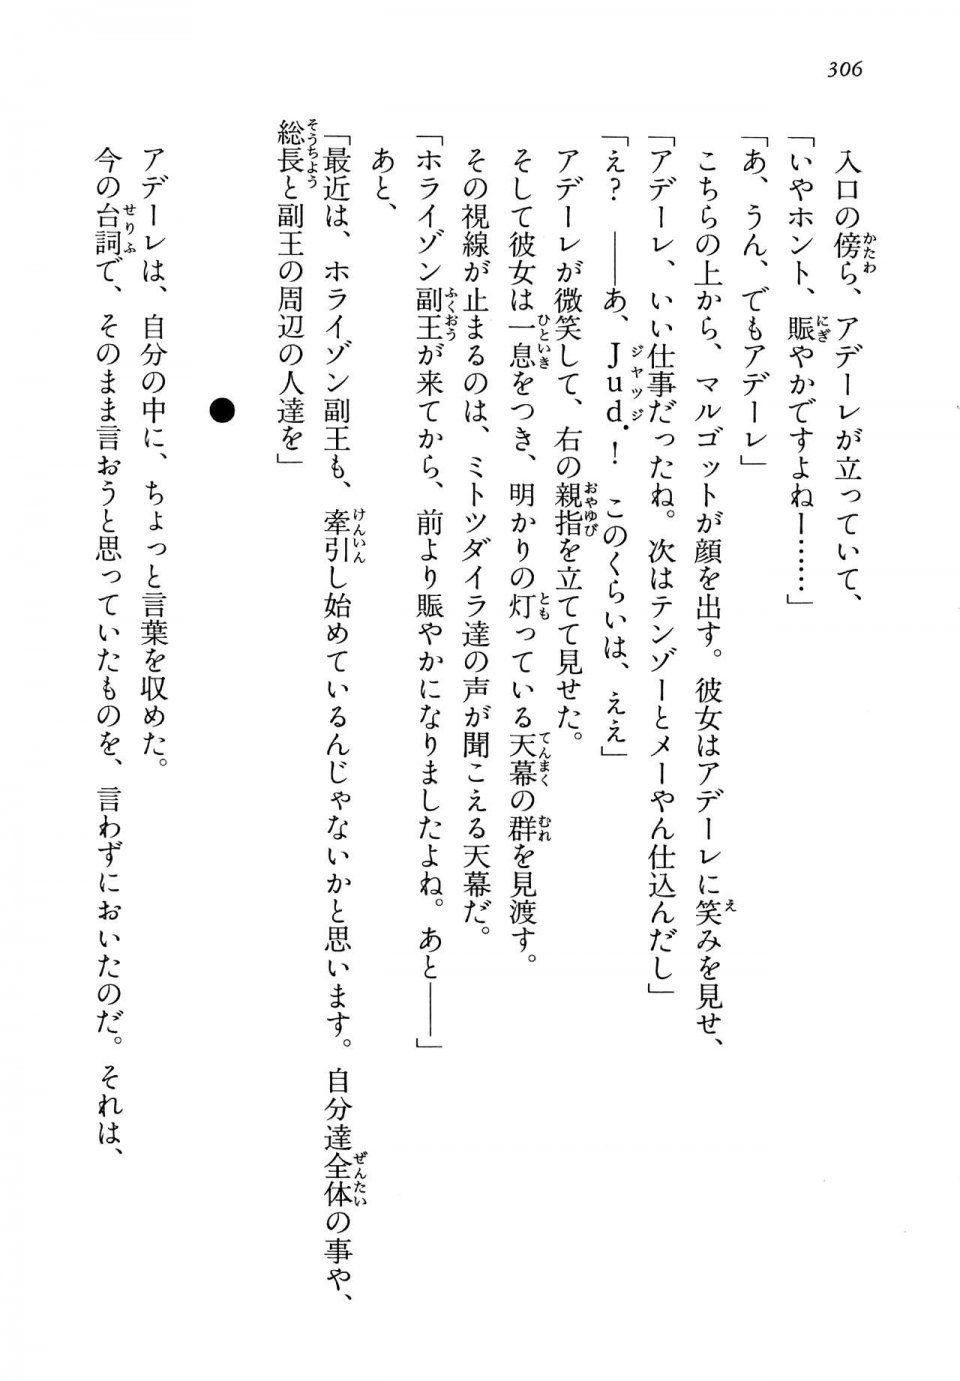 Kyoukai Senjou no Horizon LN Vol 13(6A) - Photo #306